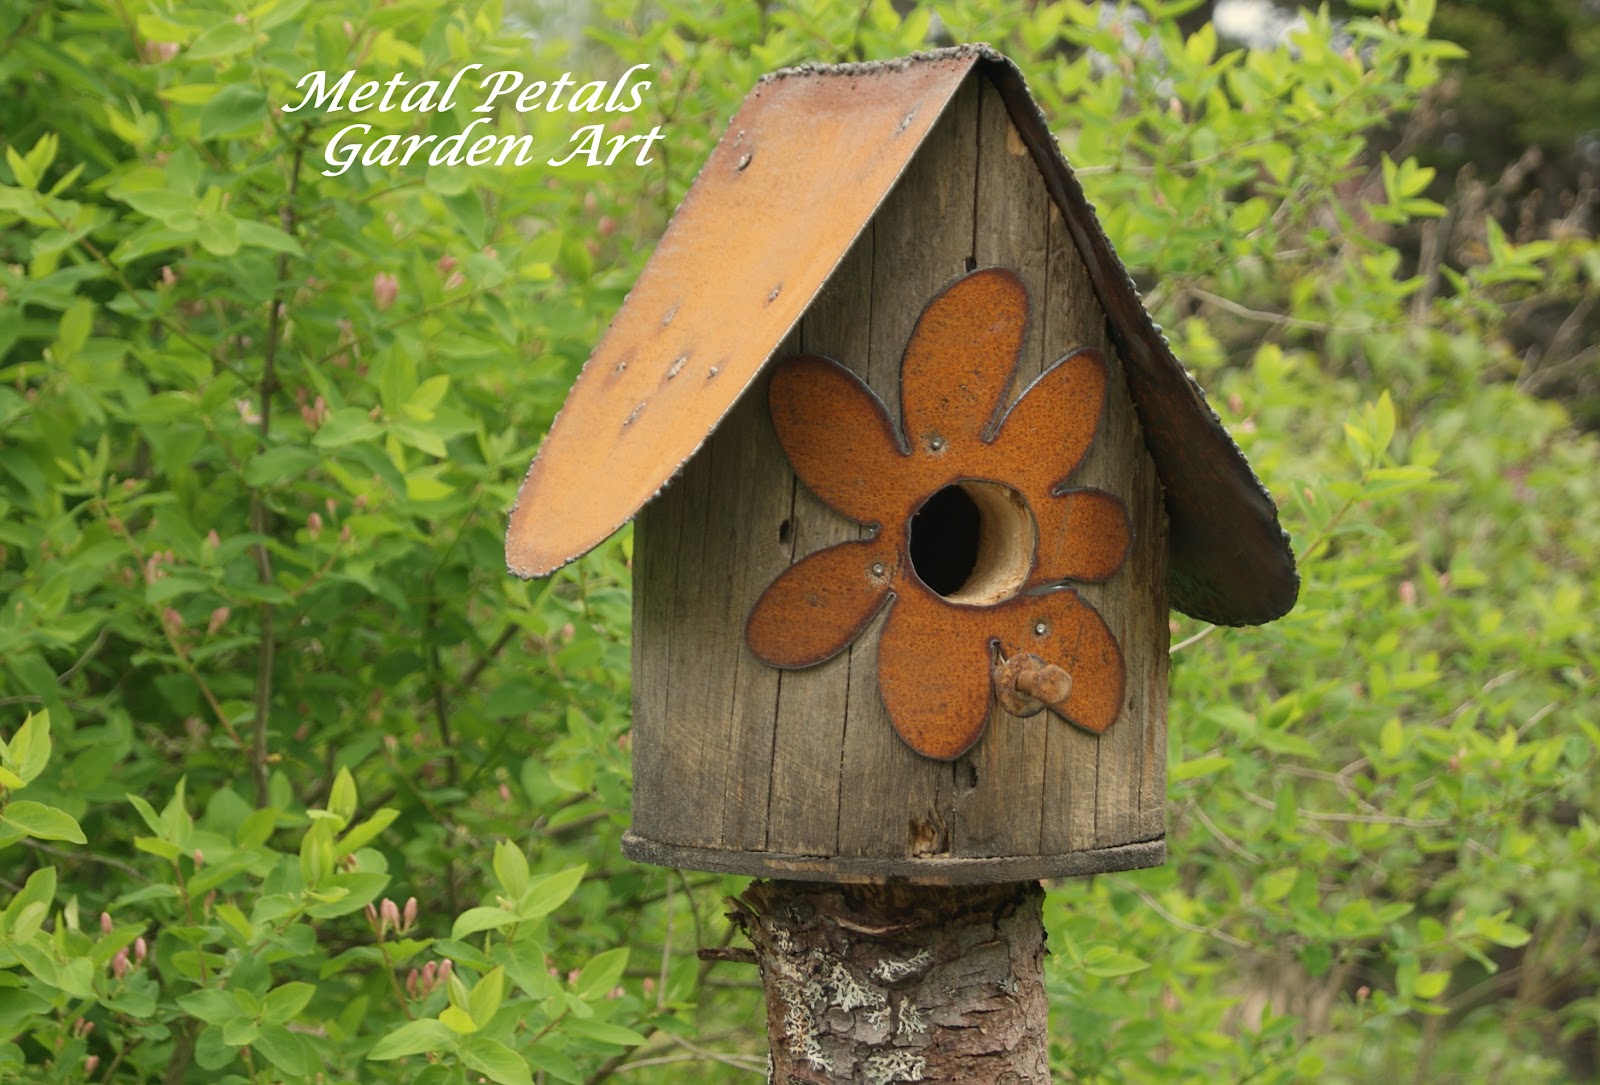 Metal Petals Garden Art: Recycled Birdhouses